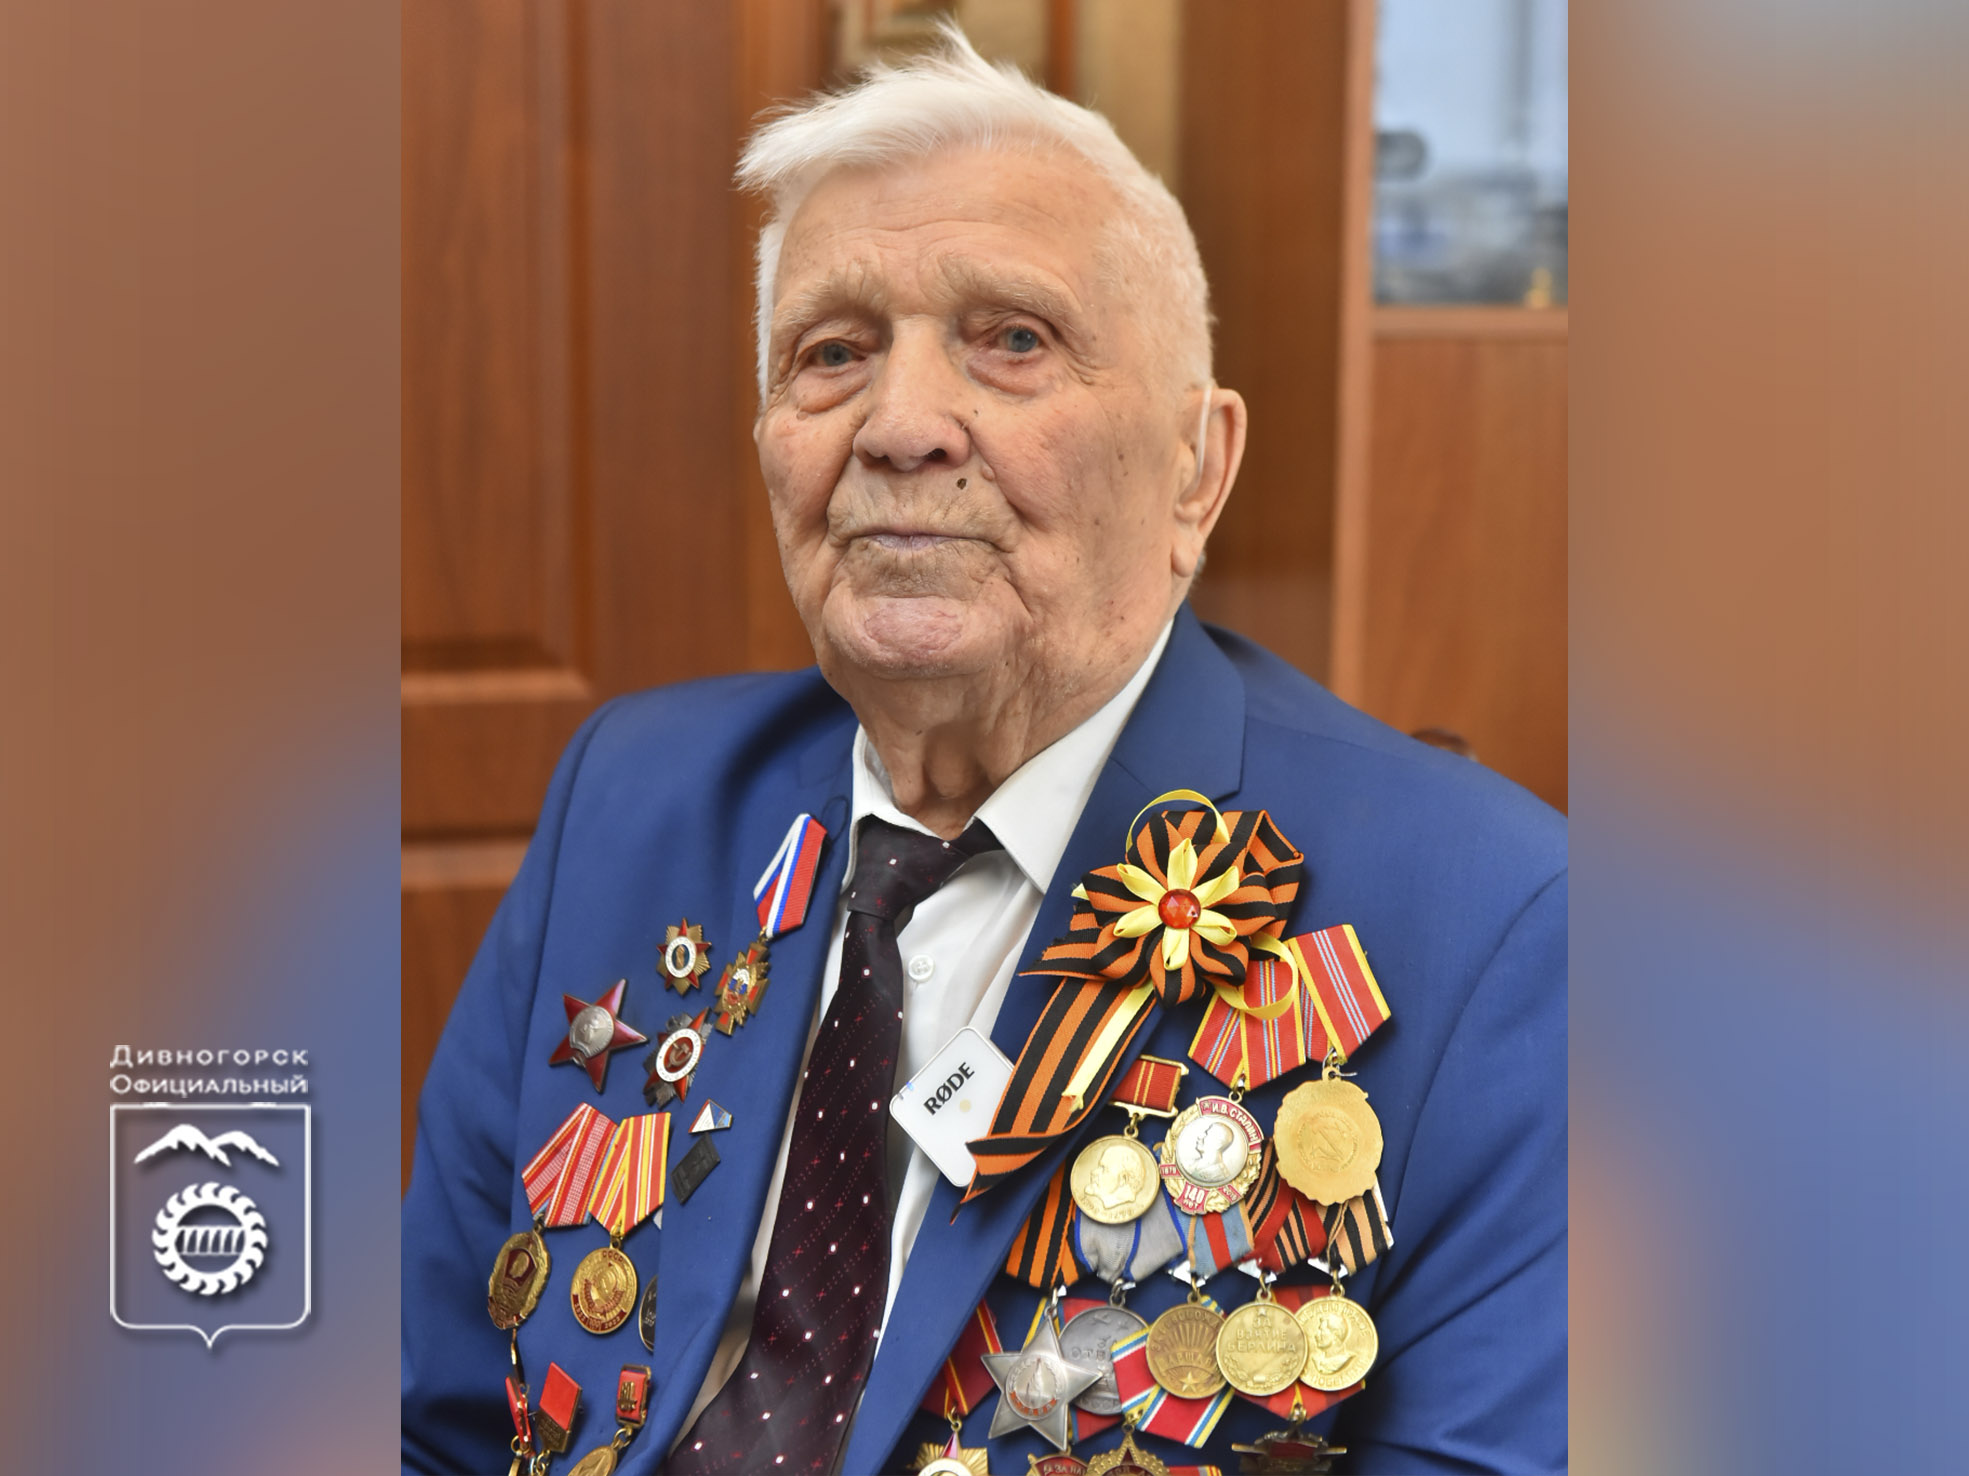 Ветеран Великой Отечественной войны Алексей Самохин отмечает 99-летие.